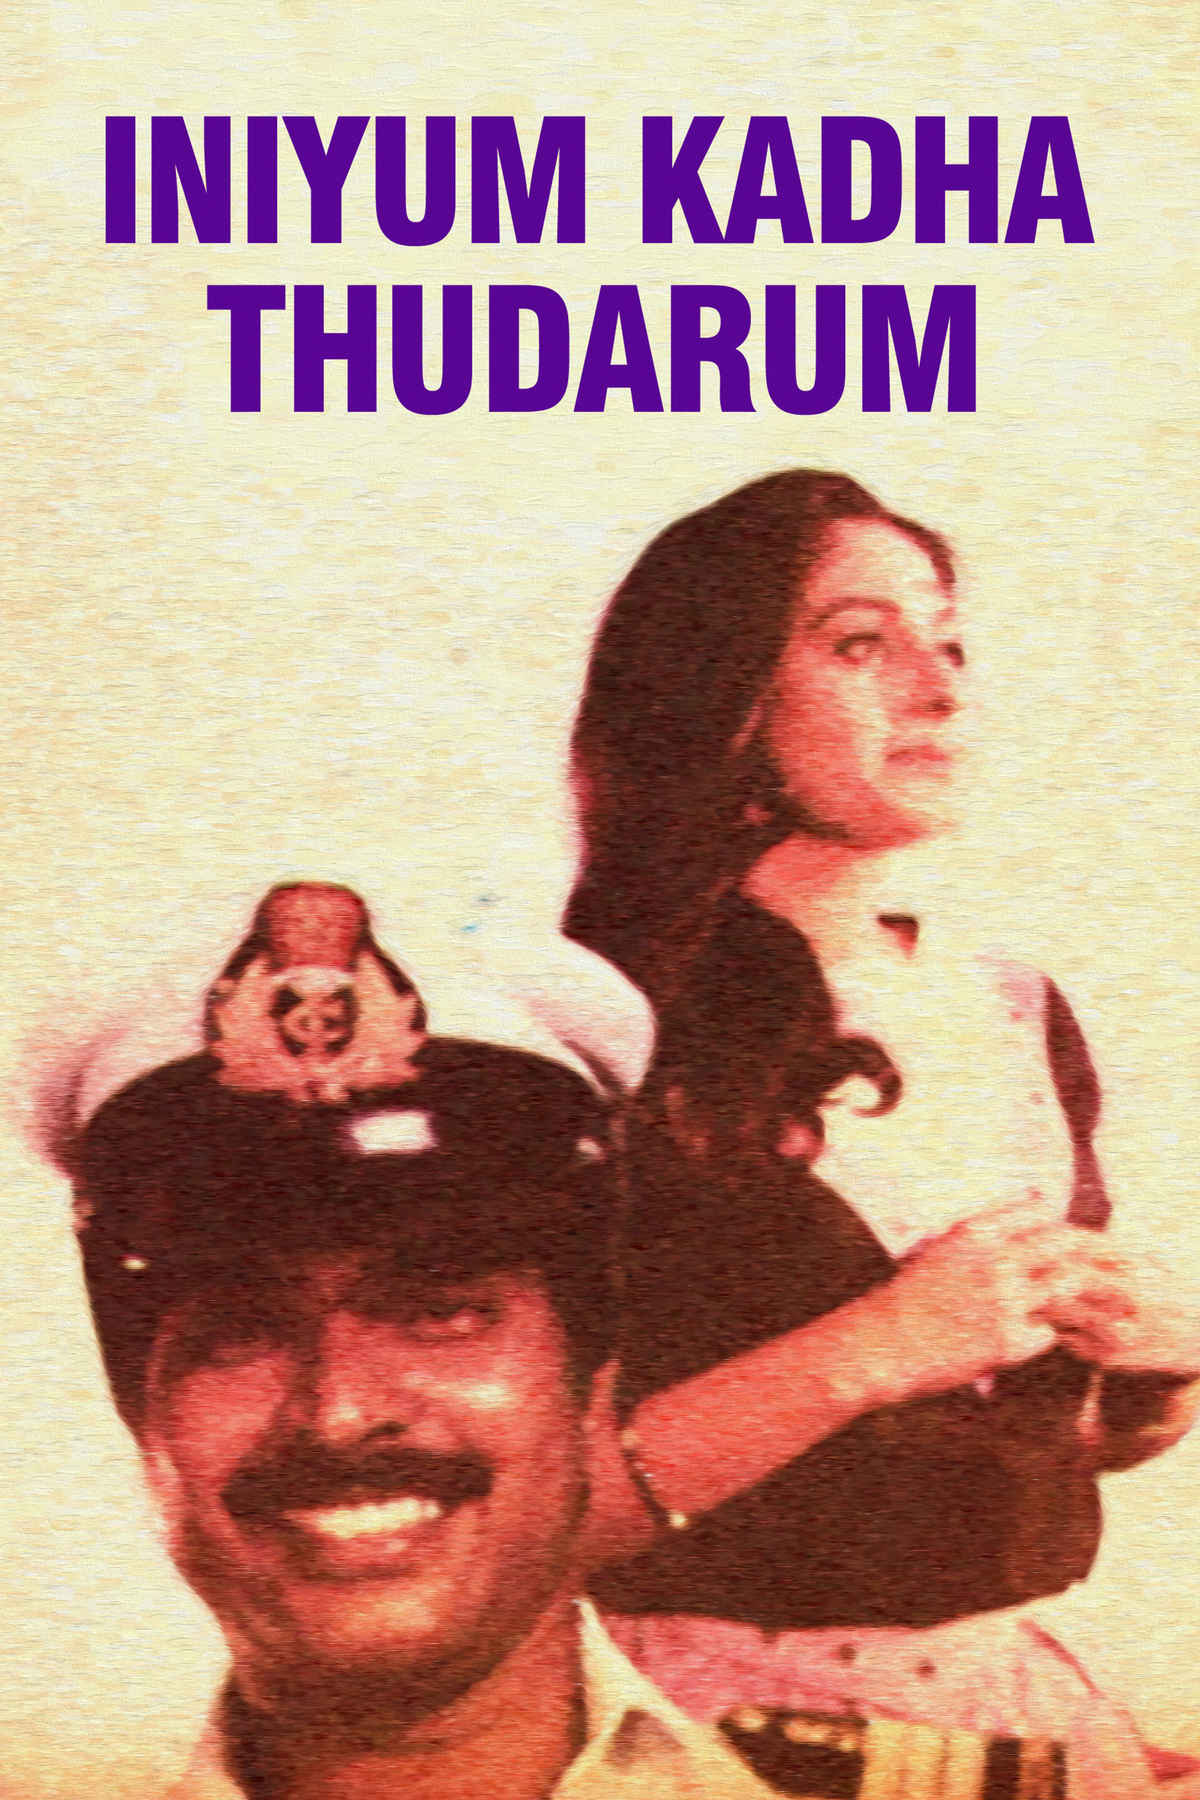 Iniyum Kadha Thudarum